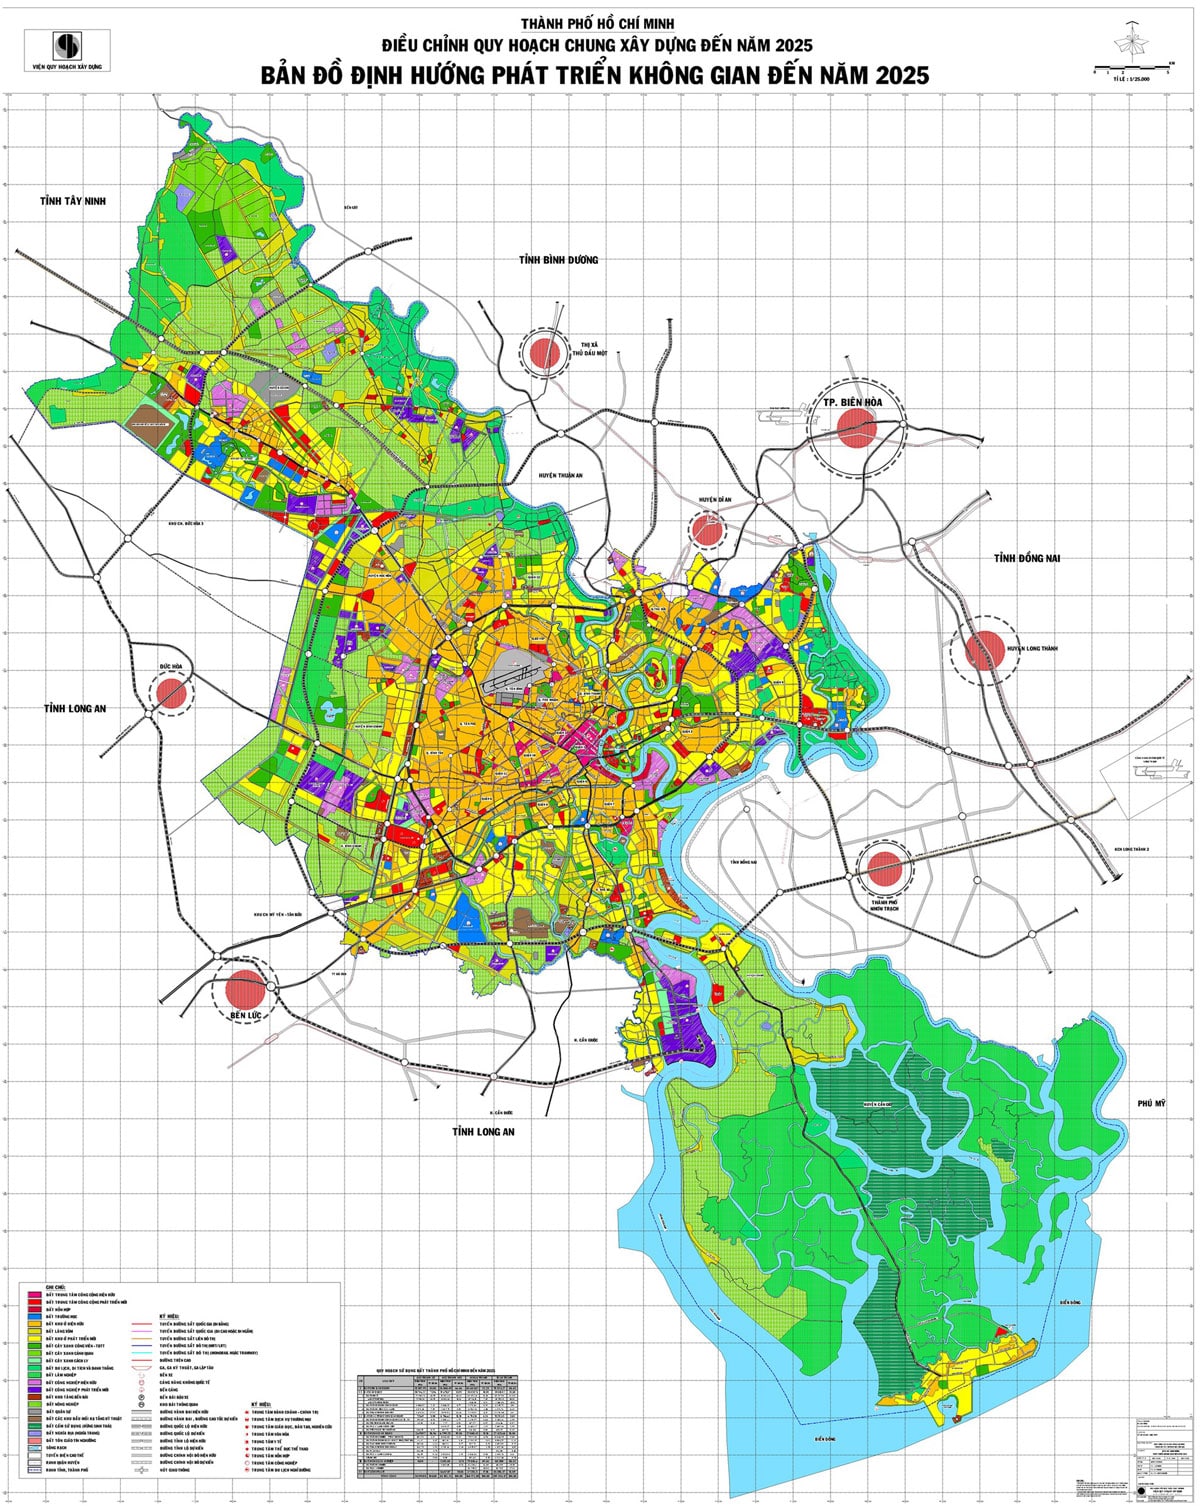 Thành phố Hồ Chí Minh Điều chỉnh quy hoạch chung xây dựng đến năm 2025. Ban đồ định hướng phát triển không gian đến năm 2025 - BẢN ĐỒ HÀNH CHÍNH TPHCM VÀ 24 QUẬN HUYỆN MỚI NHẤT 2020